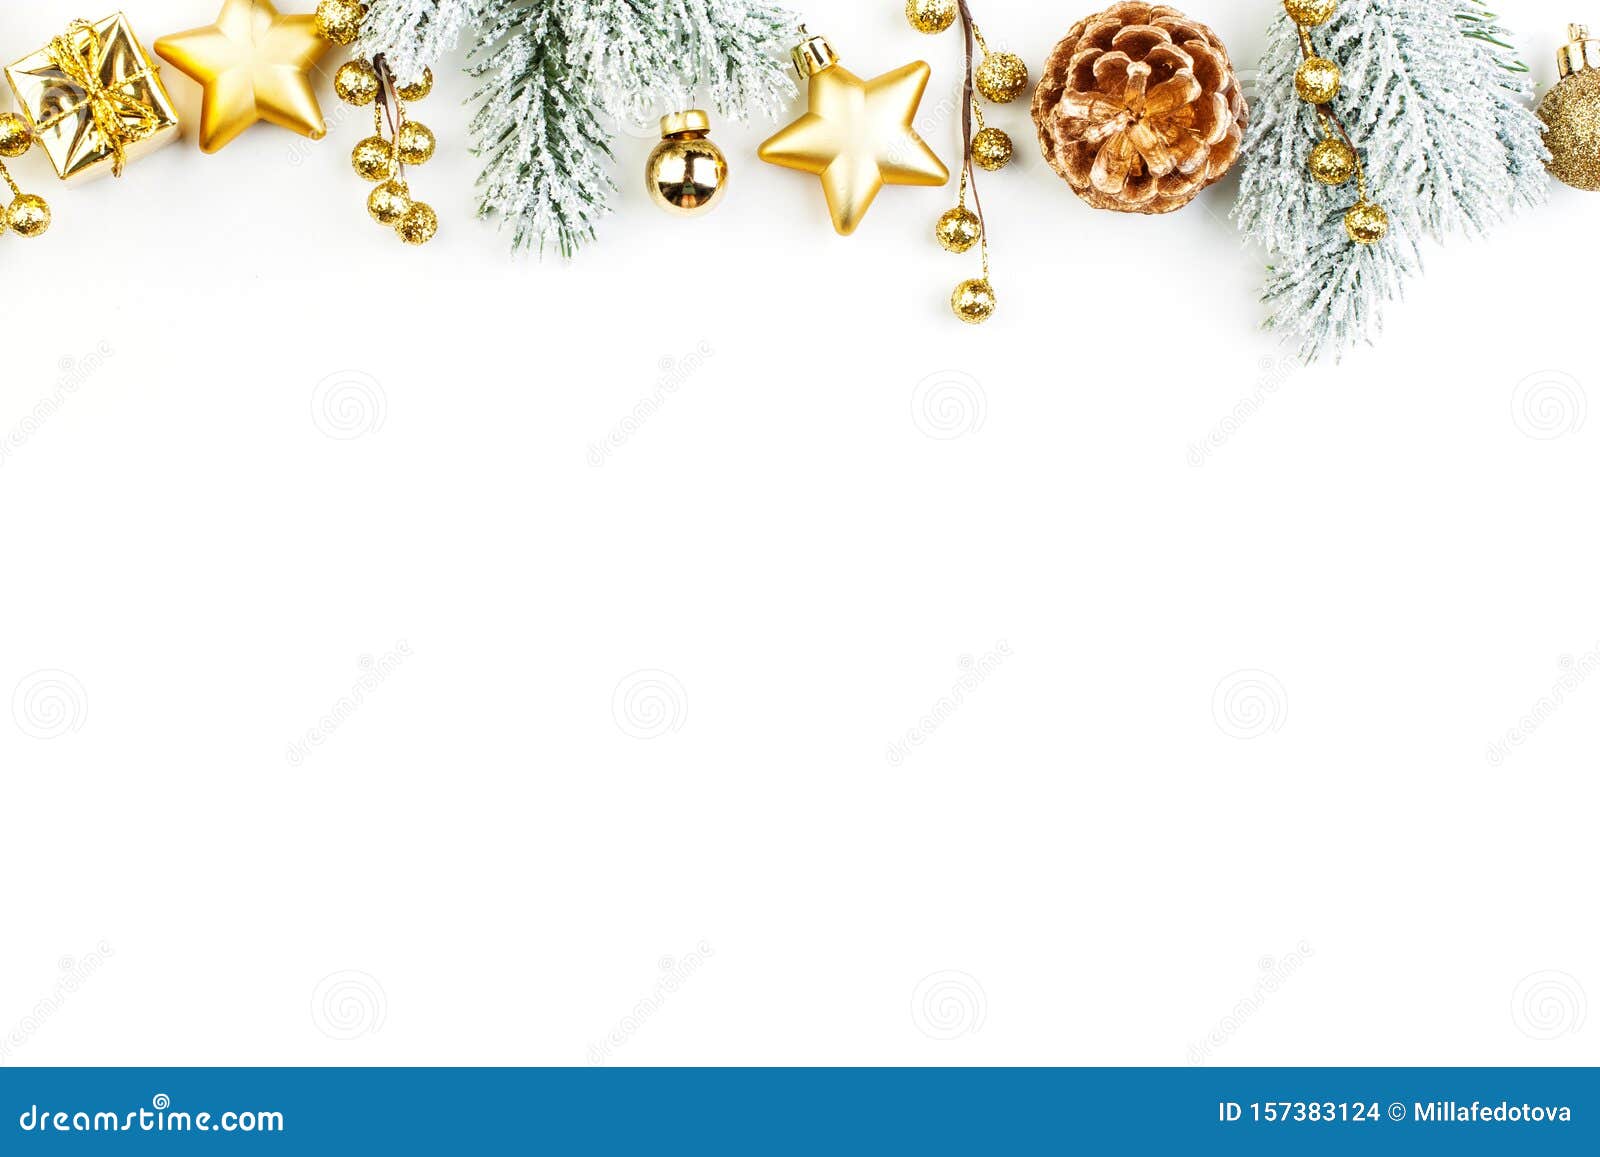 Hãy ngắm nhìn những chiếc đèn vàng lấp lánh trên nền trắng tuyết của thiên đường giáng sinh! Với sắc màu vàng xanh truyền thống, không gian của bạn sẽ trở nên ấm áp và tươi vui hơn. Hãy cùng chia sẻ niềm vui và niềm hạnh phúc khiến mùa giáng sinh trở nên đặc biệt hơn bao giờ hết!